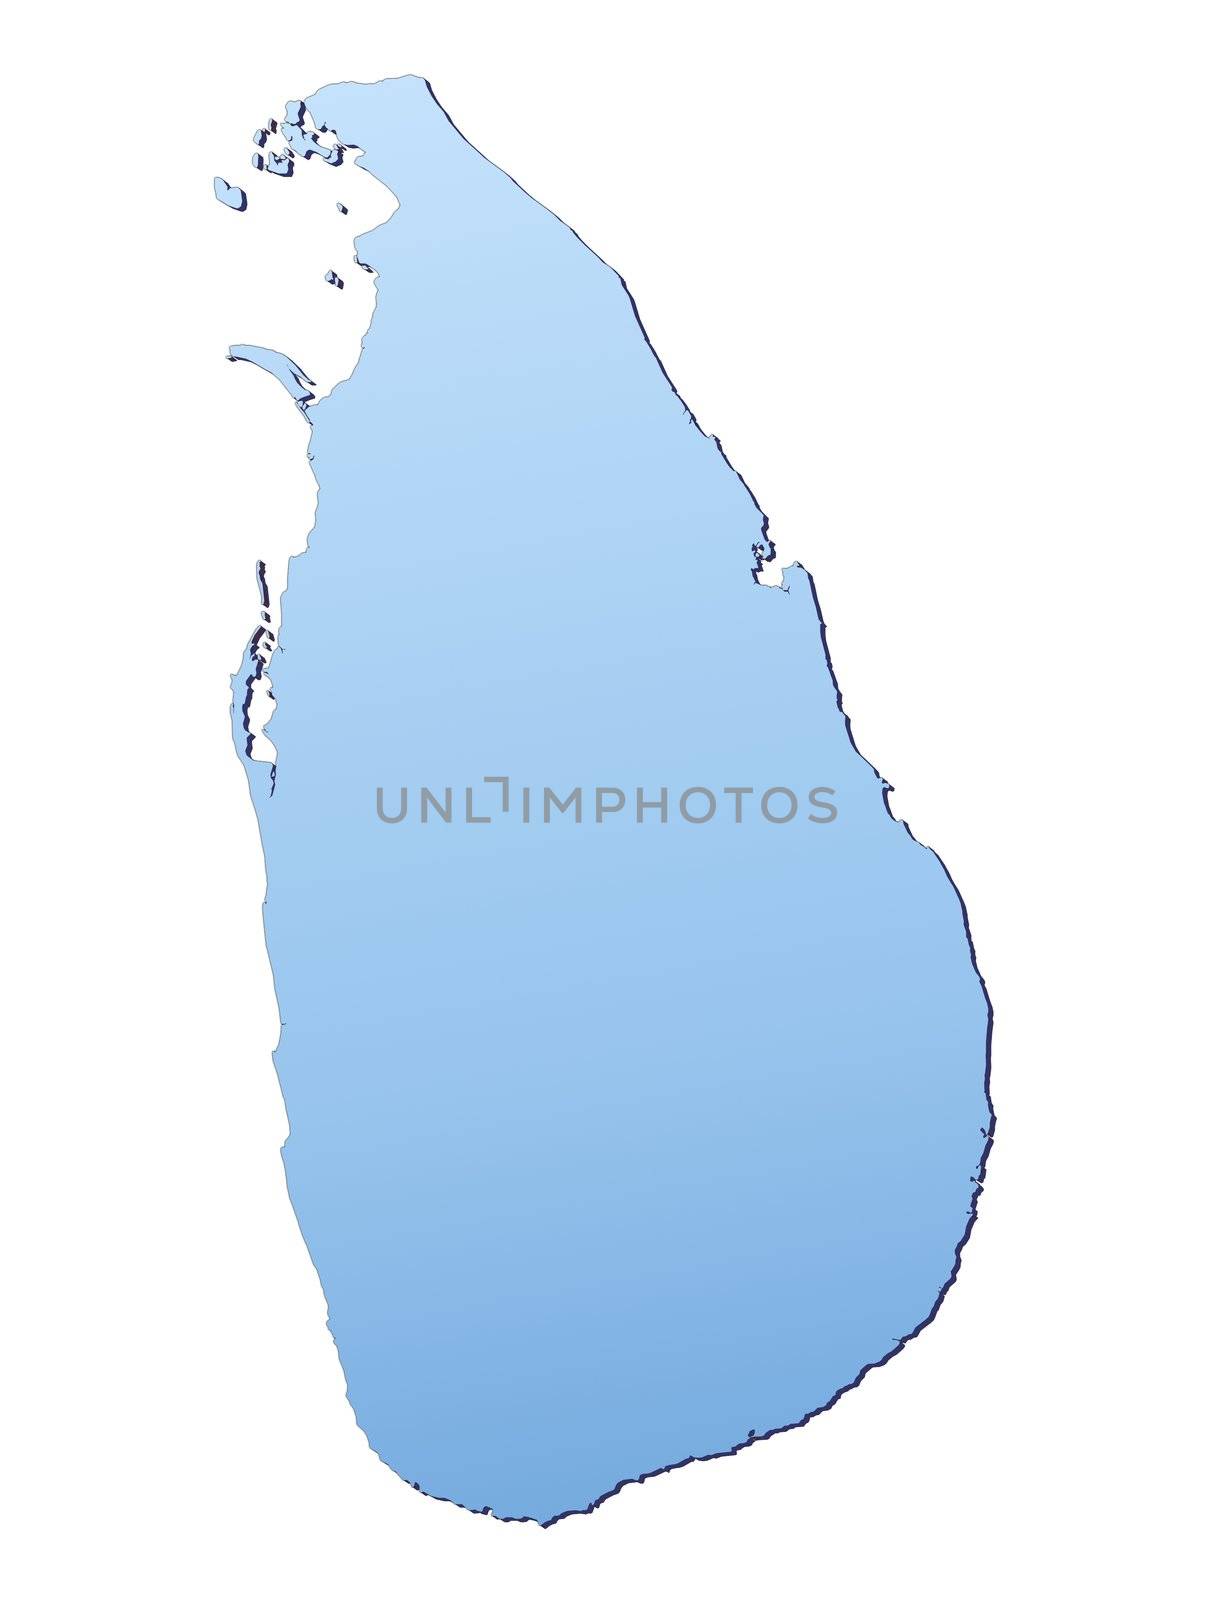 Sri Lanka map by skvoor